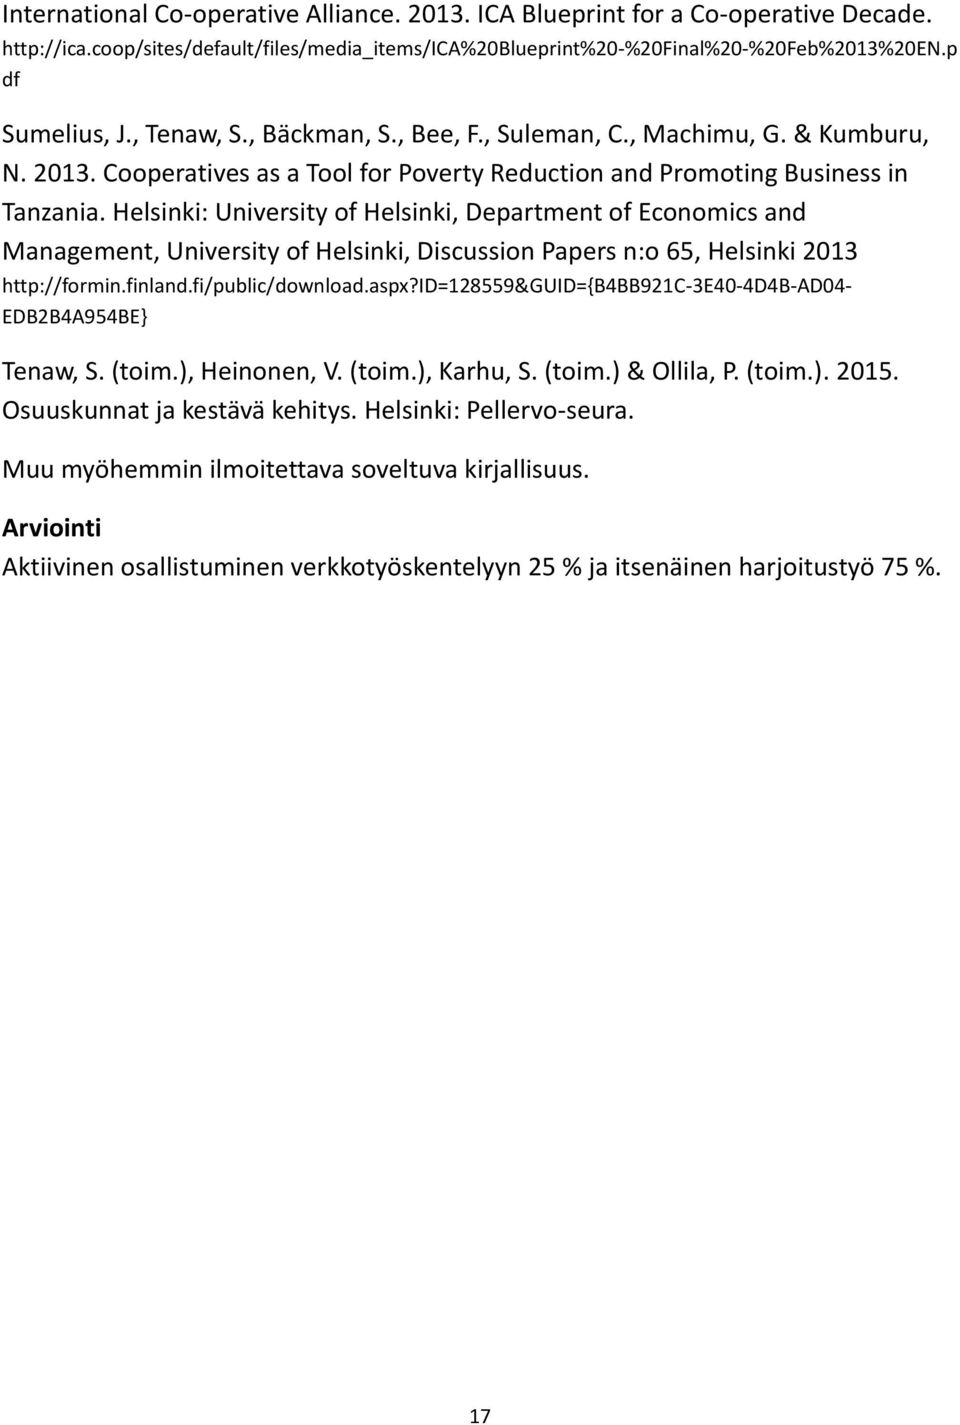 Helsinki: University of Helsinki, Department of Economics and Management, University of Helsinki, Discussion Papers n:o 65, Helsinki 2013 http://formin.finland.fi/public/download.aspx?